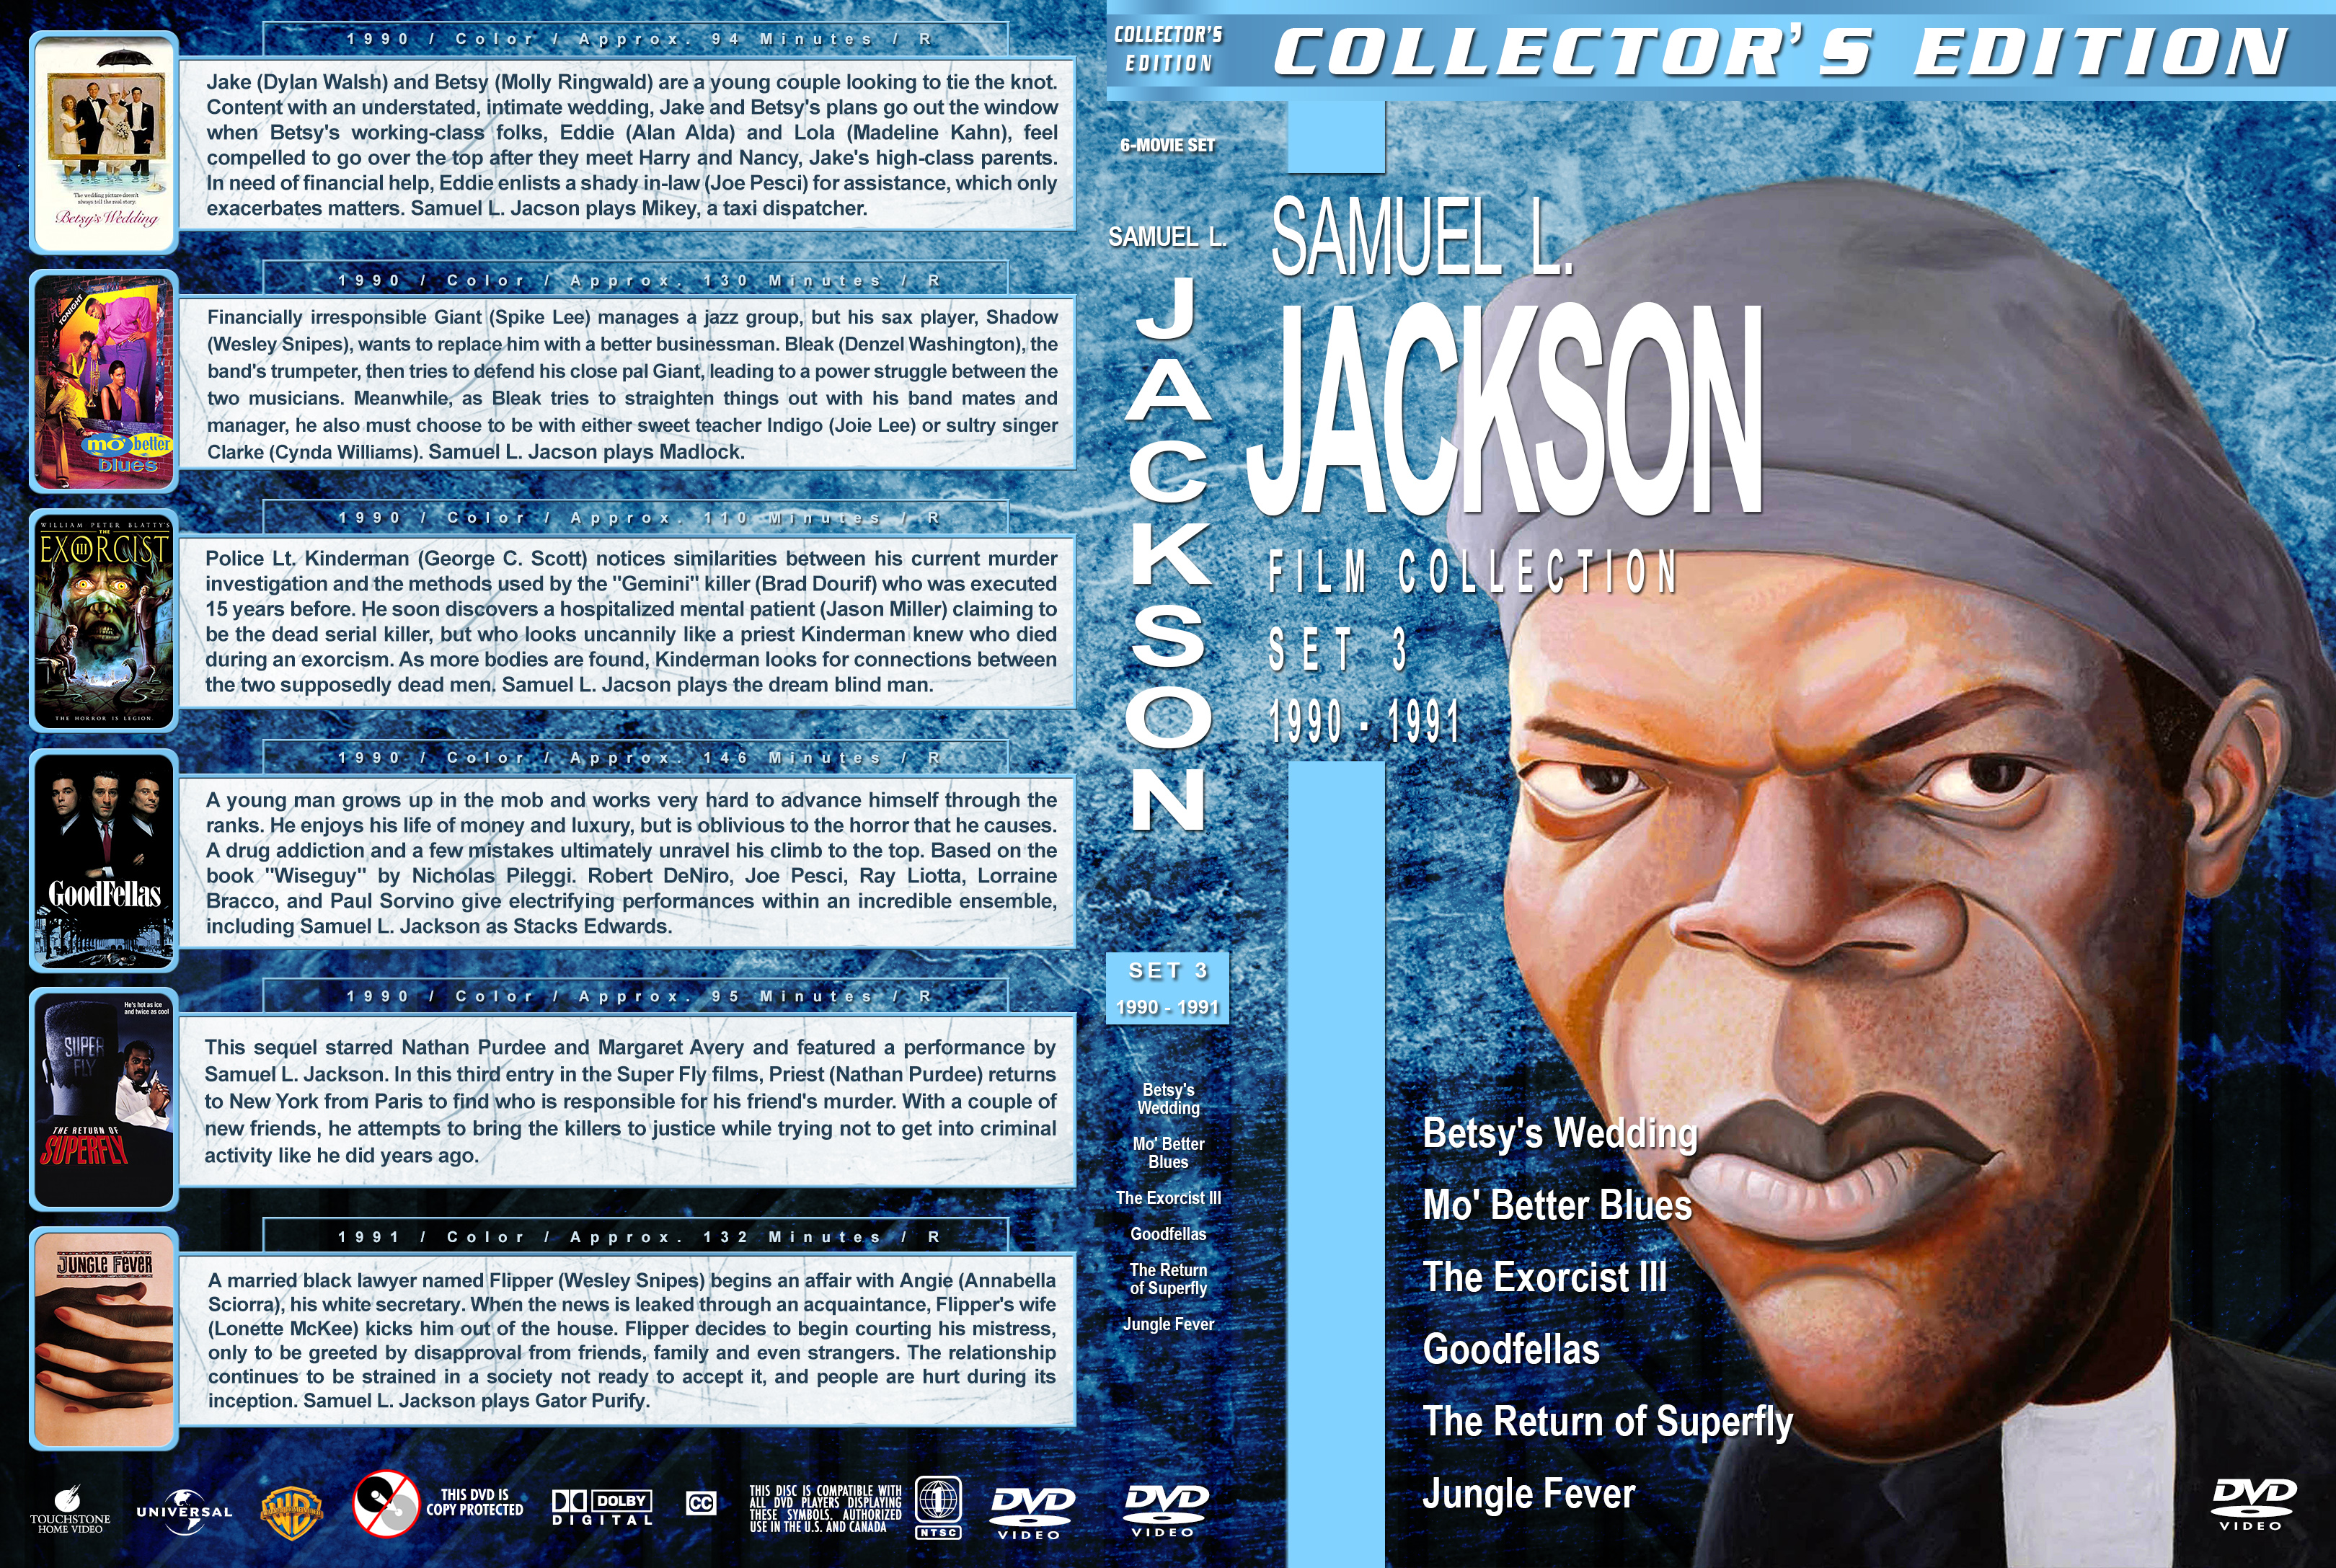 Samuel L Jackson Film Collection Set 3 1990 1991 Cover 